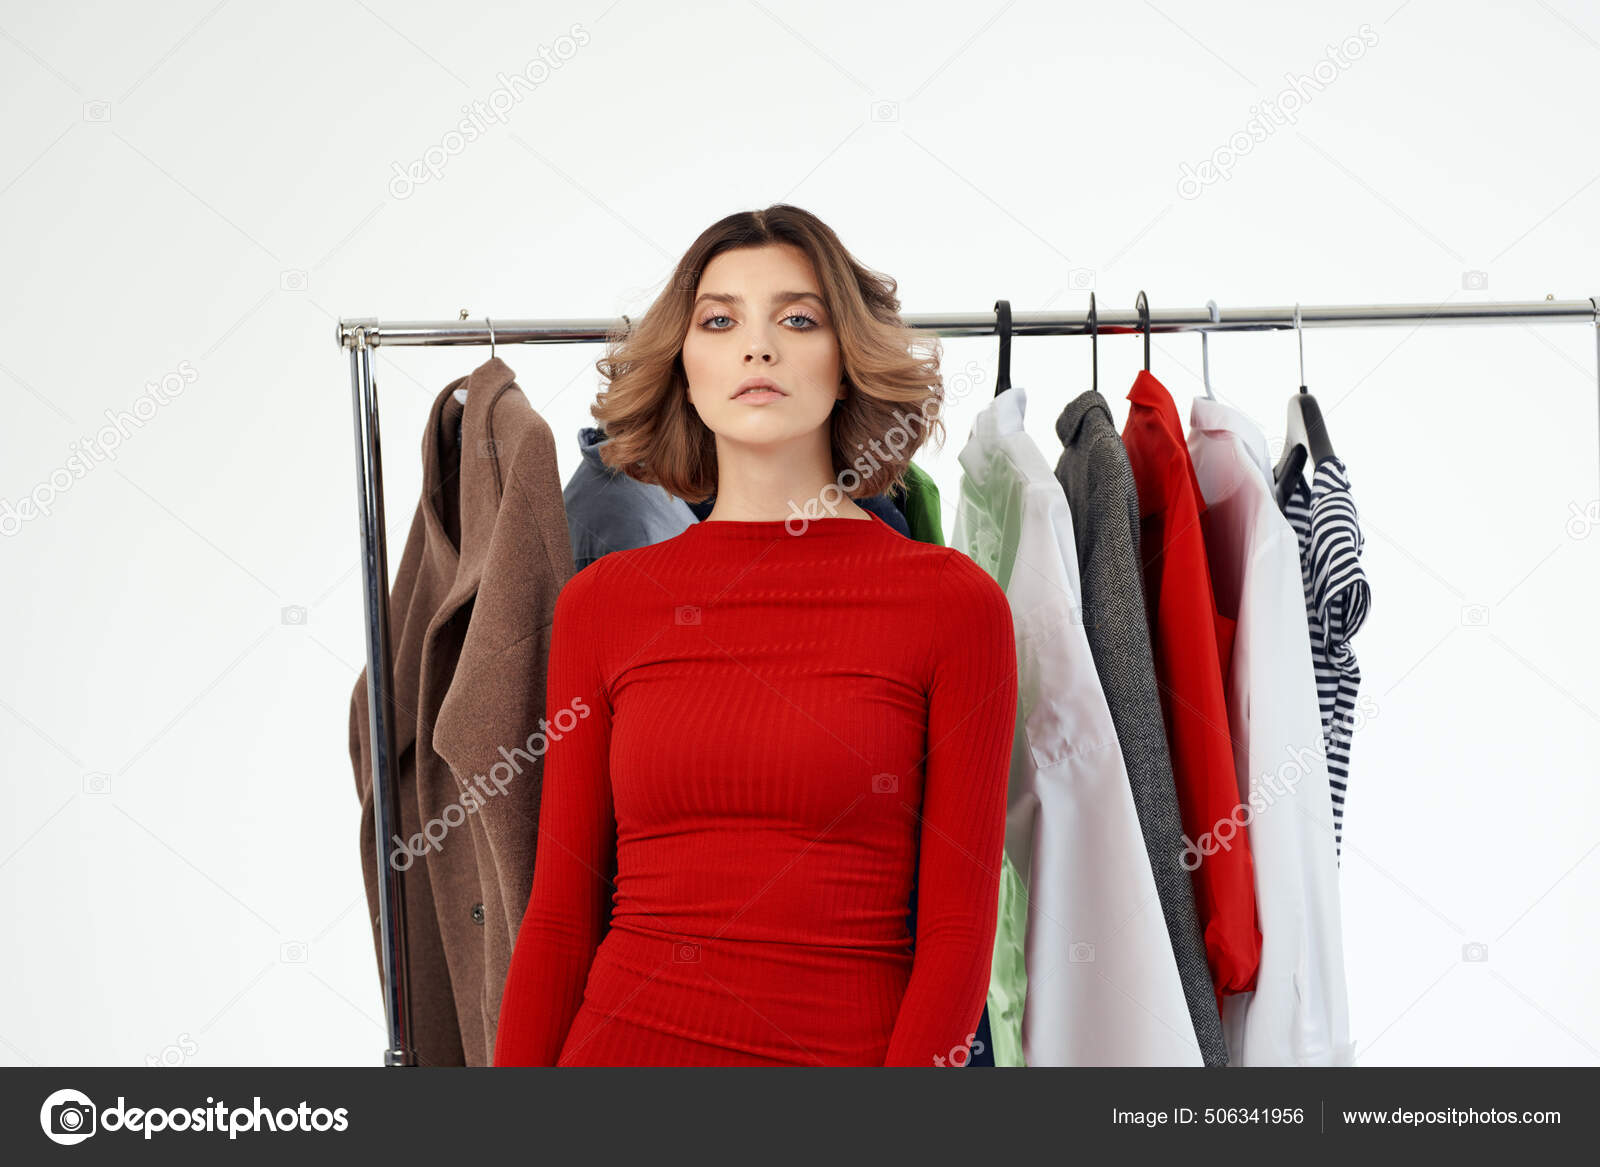 Bonita mujer al lado de ropa diversión venta al por menor aislado fondo: fotografía de stock © ShotStudio #506341956 | Depositphotos